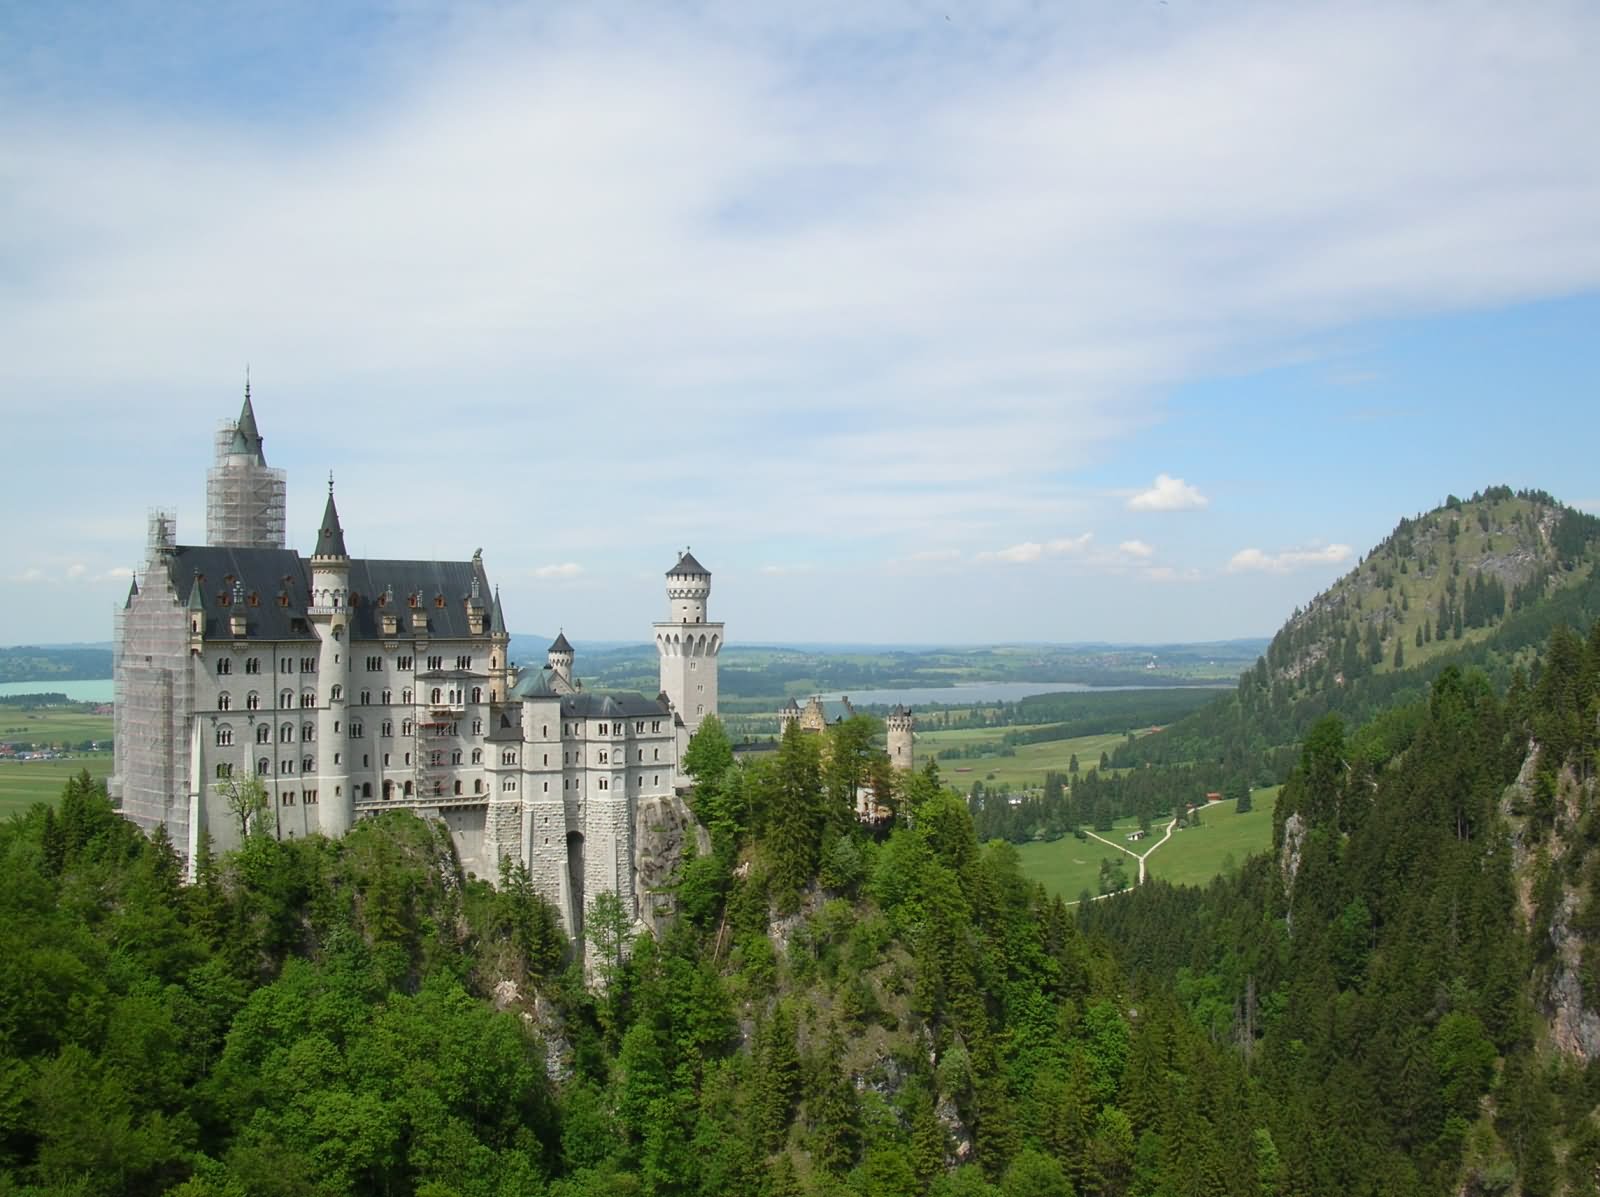 The Neuschwanstein Castle In Bavaria, Germany